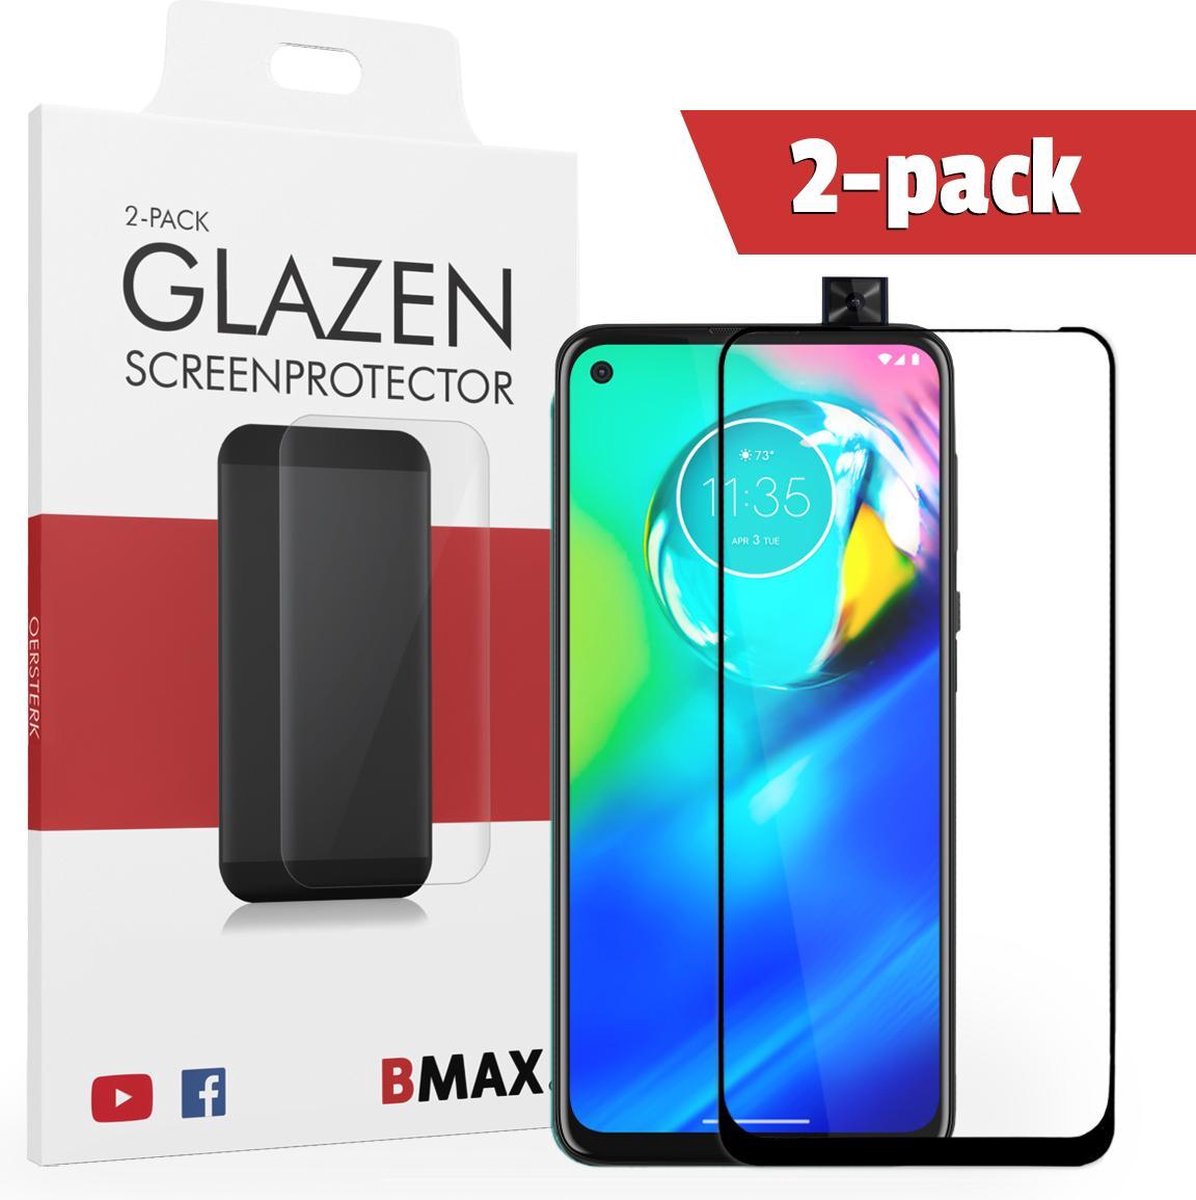 2-pack Bmax Motorola G8 Power Screenprotector - Glass - Full Cover 2.5d - Black